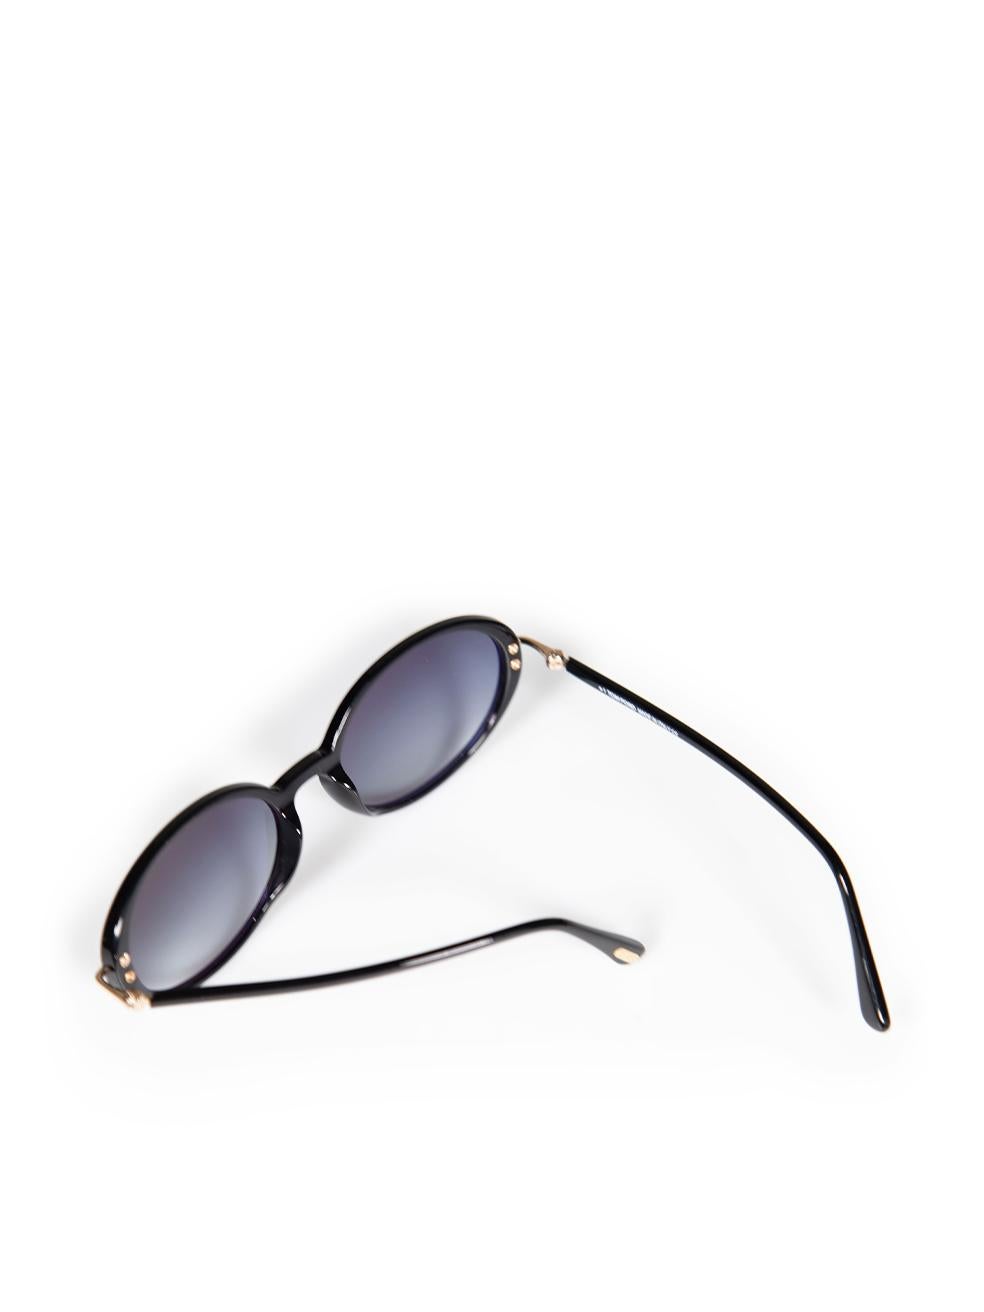 Ovale Tom Ford-Sonnenbrille in glänzendem Schwarz mit Raquel 3